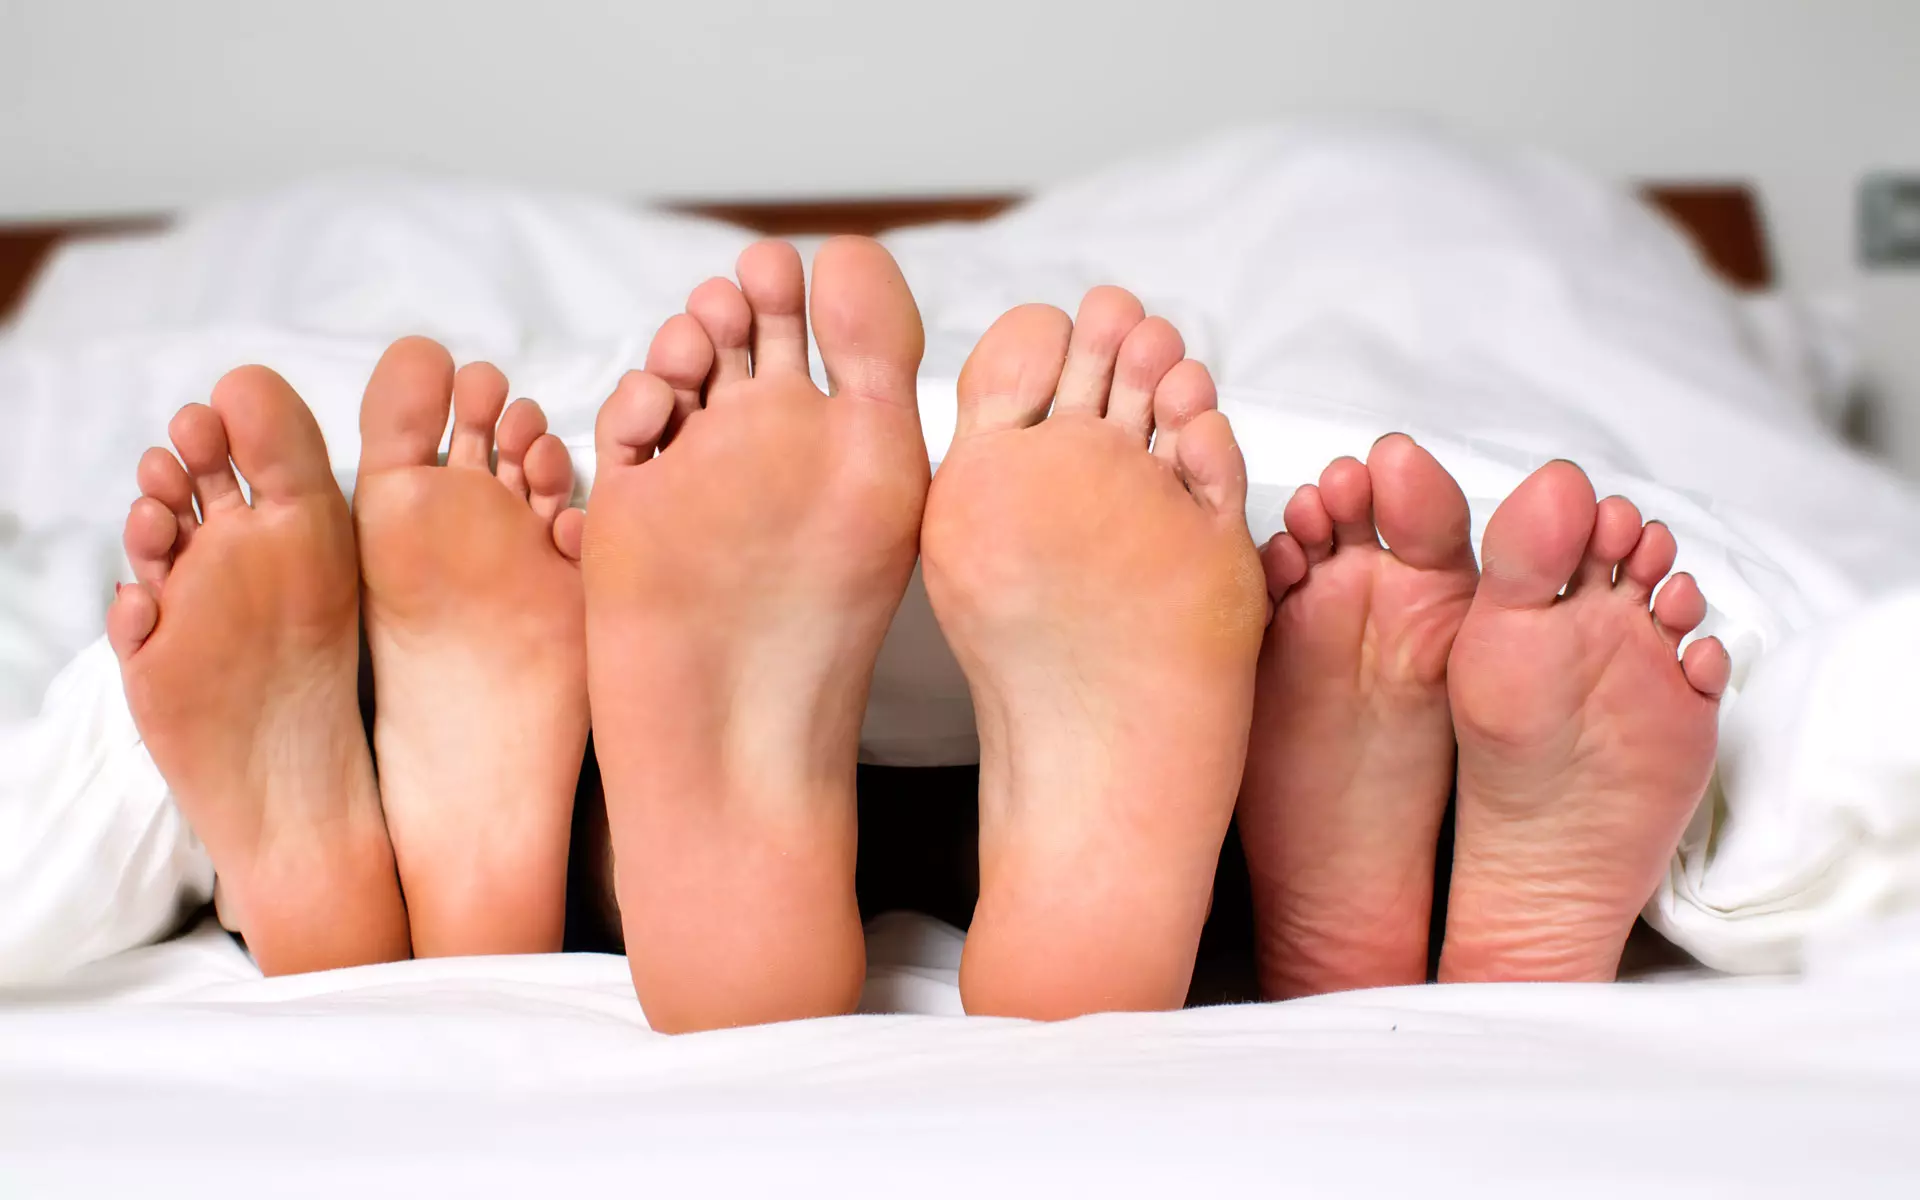 אילוסטרציה של כפות רגליים במיטה